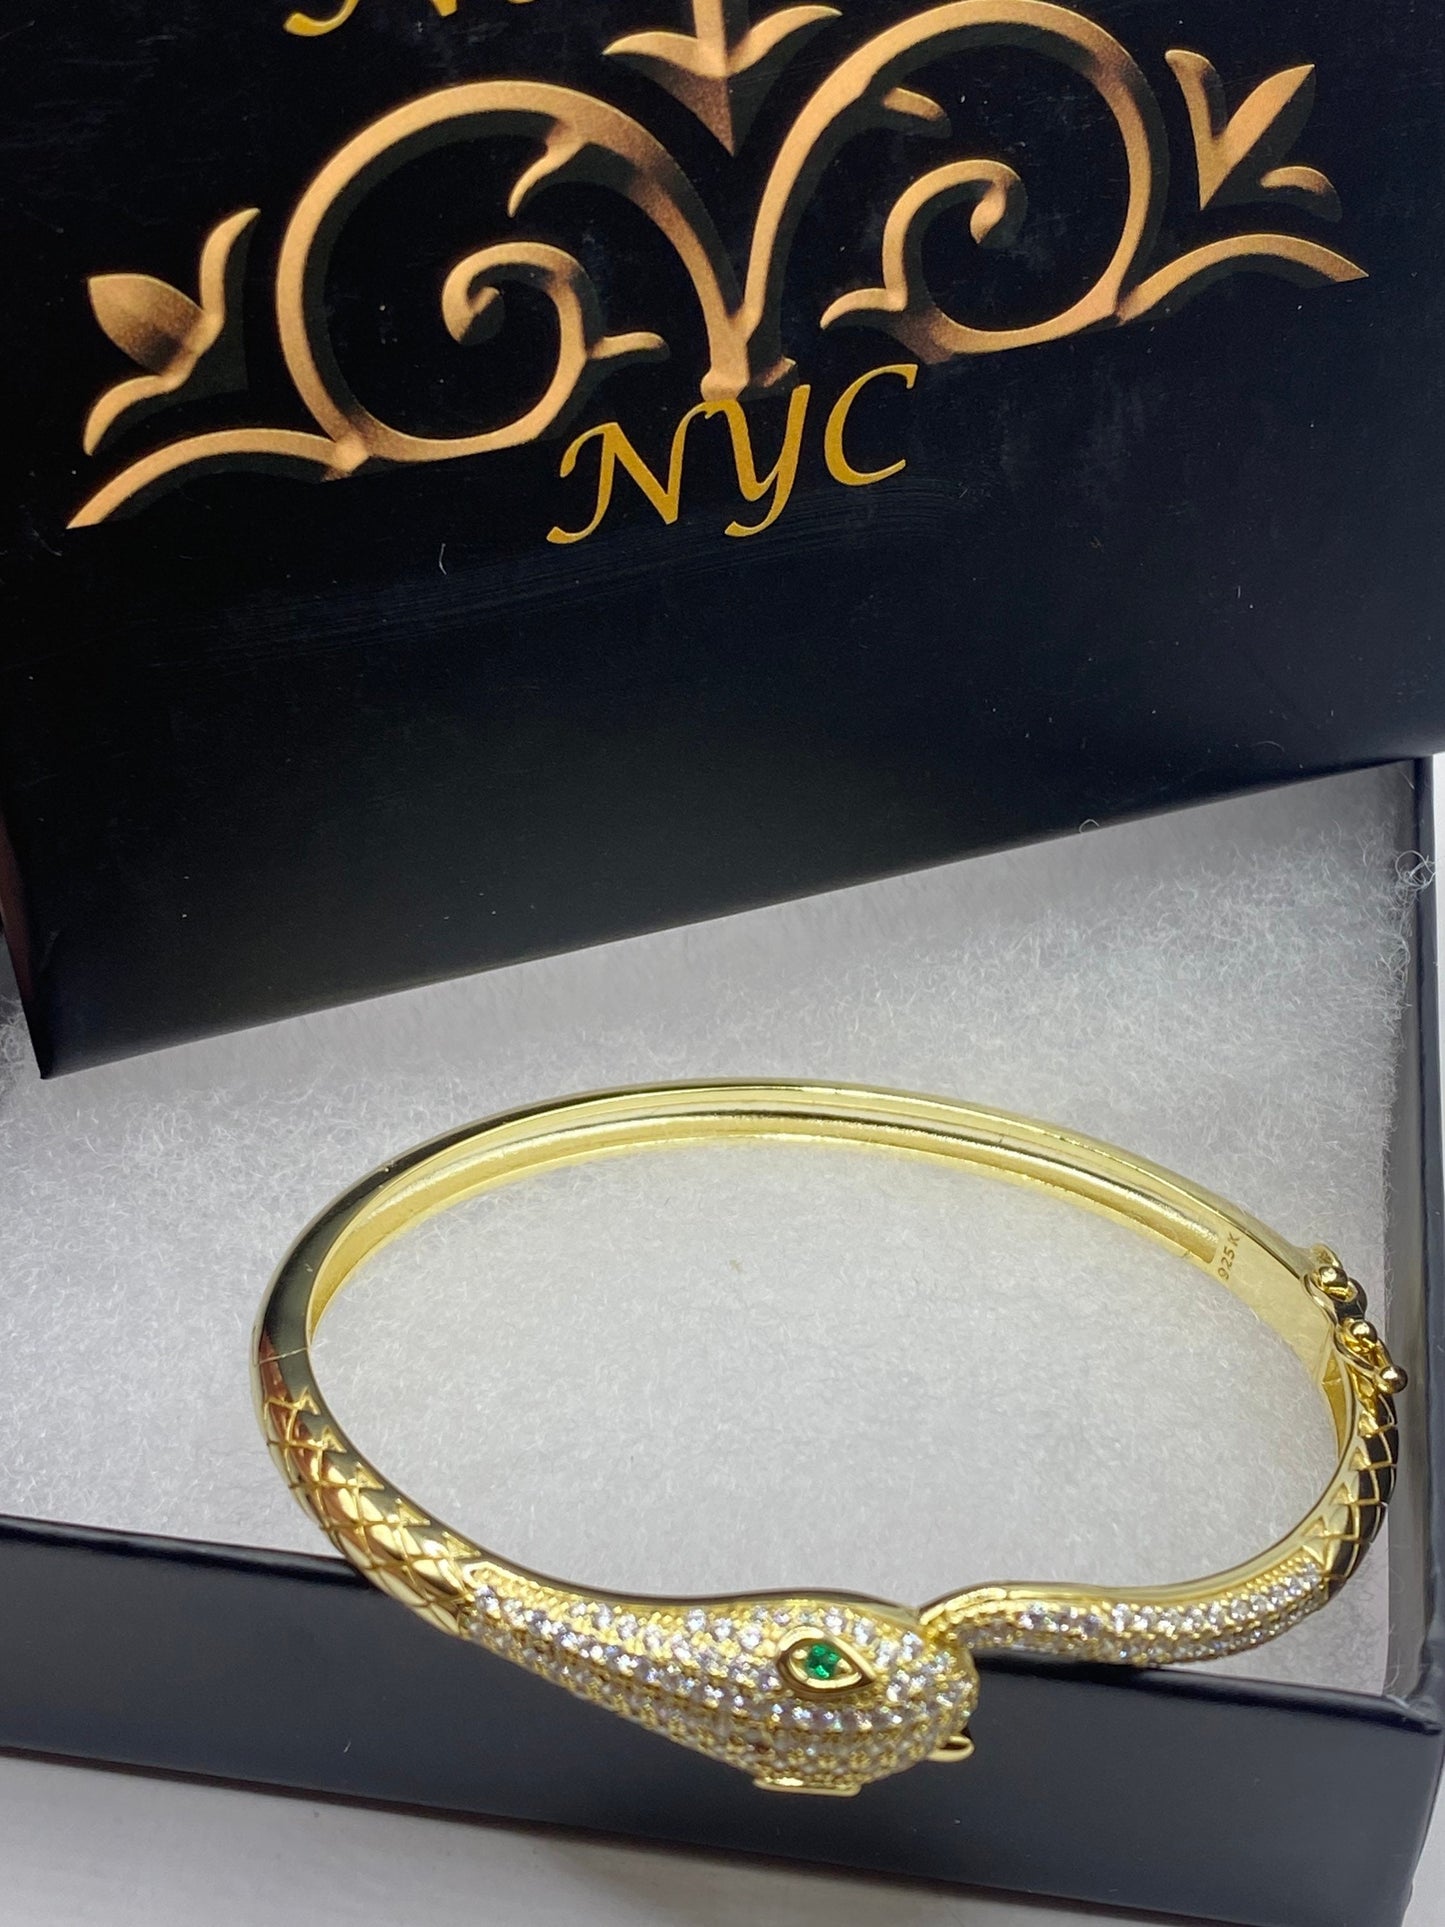 Vintage Snake Bangle Bracelet Gold Finished 925 Sterling Silver Crystal Pave